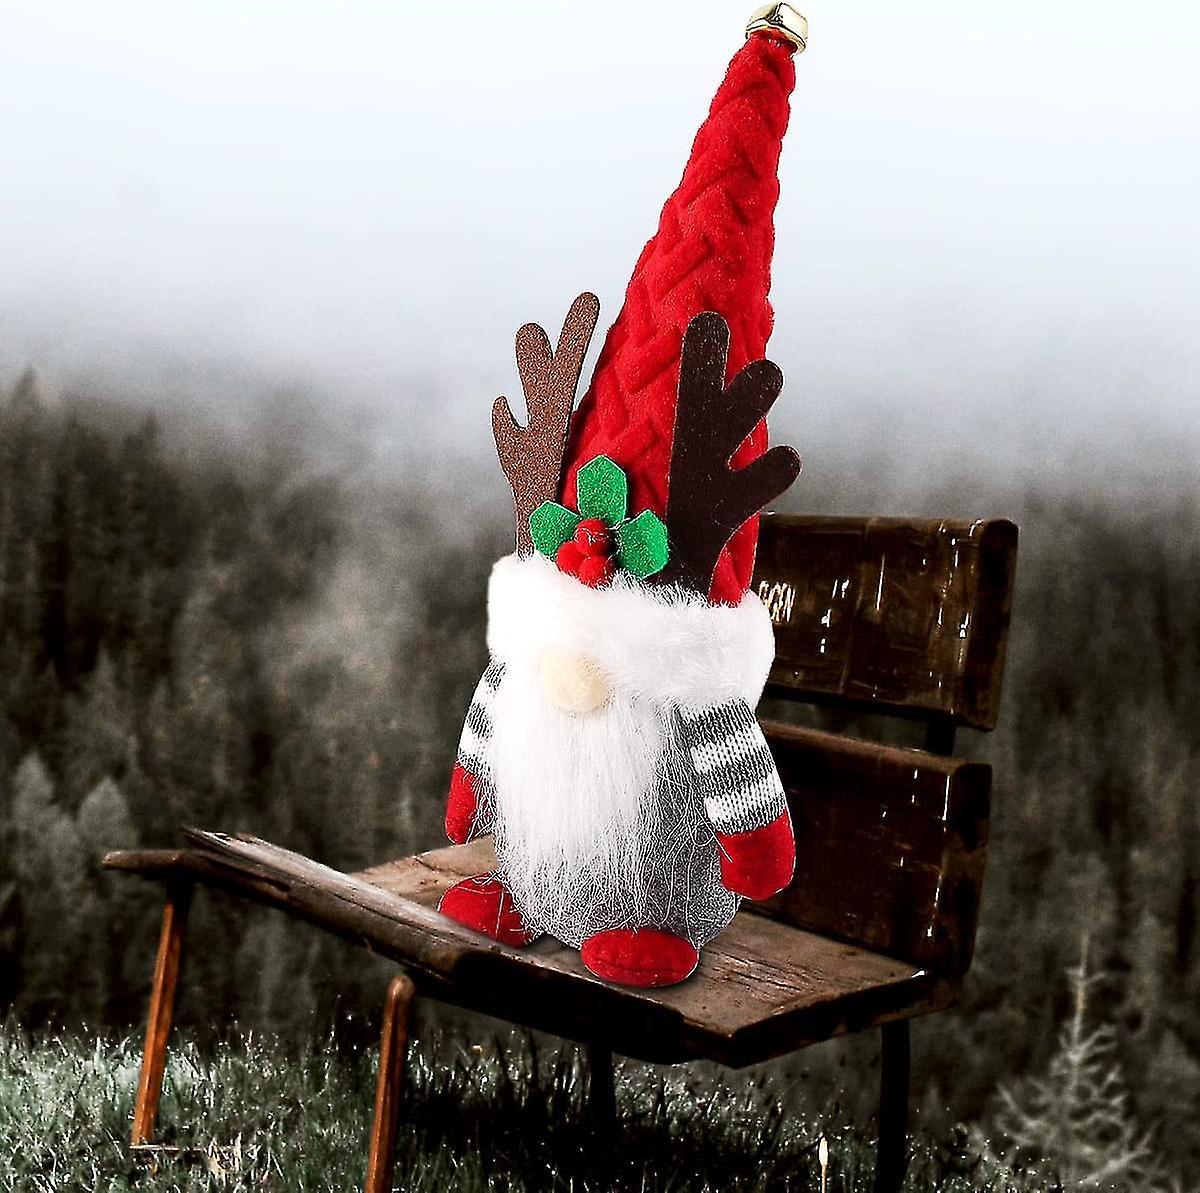 Đồ trang trí lùn Giáng sinh, Gnome Giáng sinh Thụy Điển